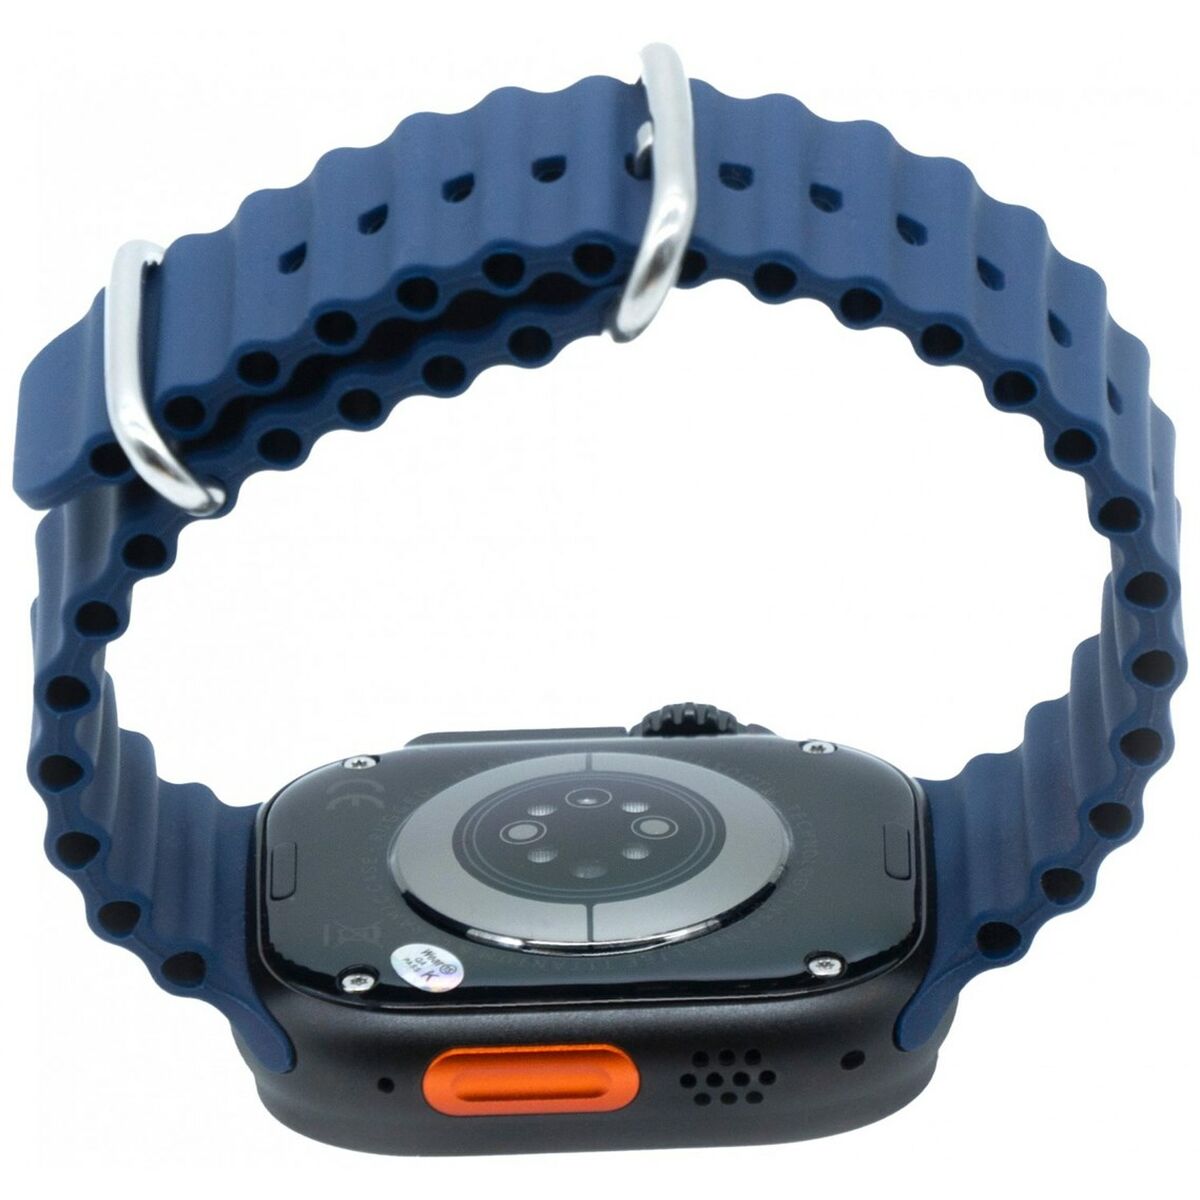 Smartwatch Kiano Solid Grijs Zwart Blauw